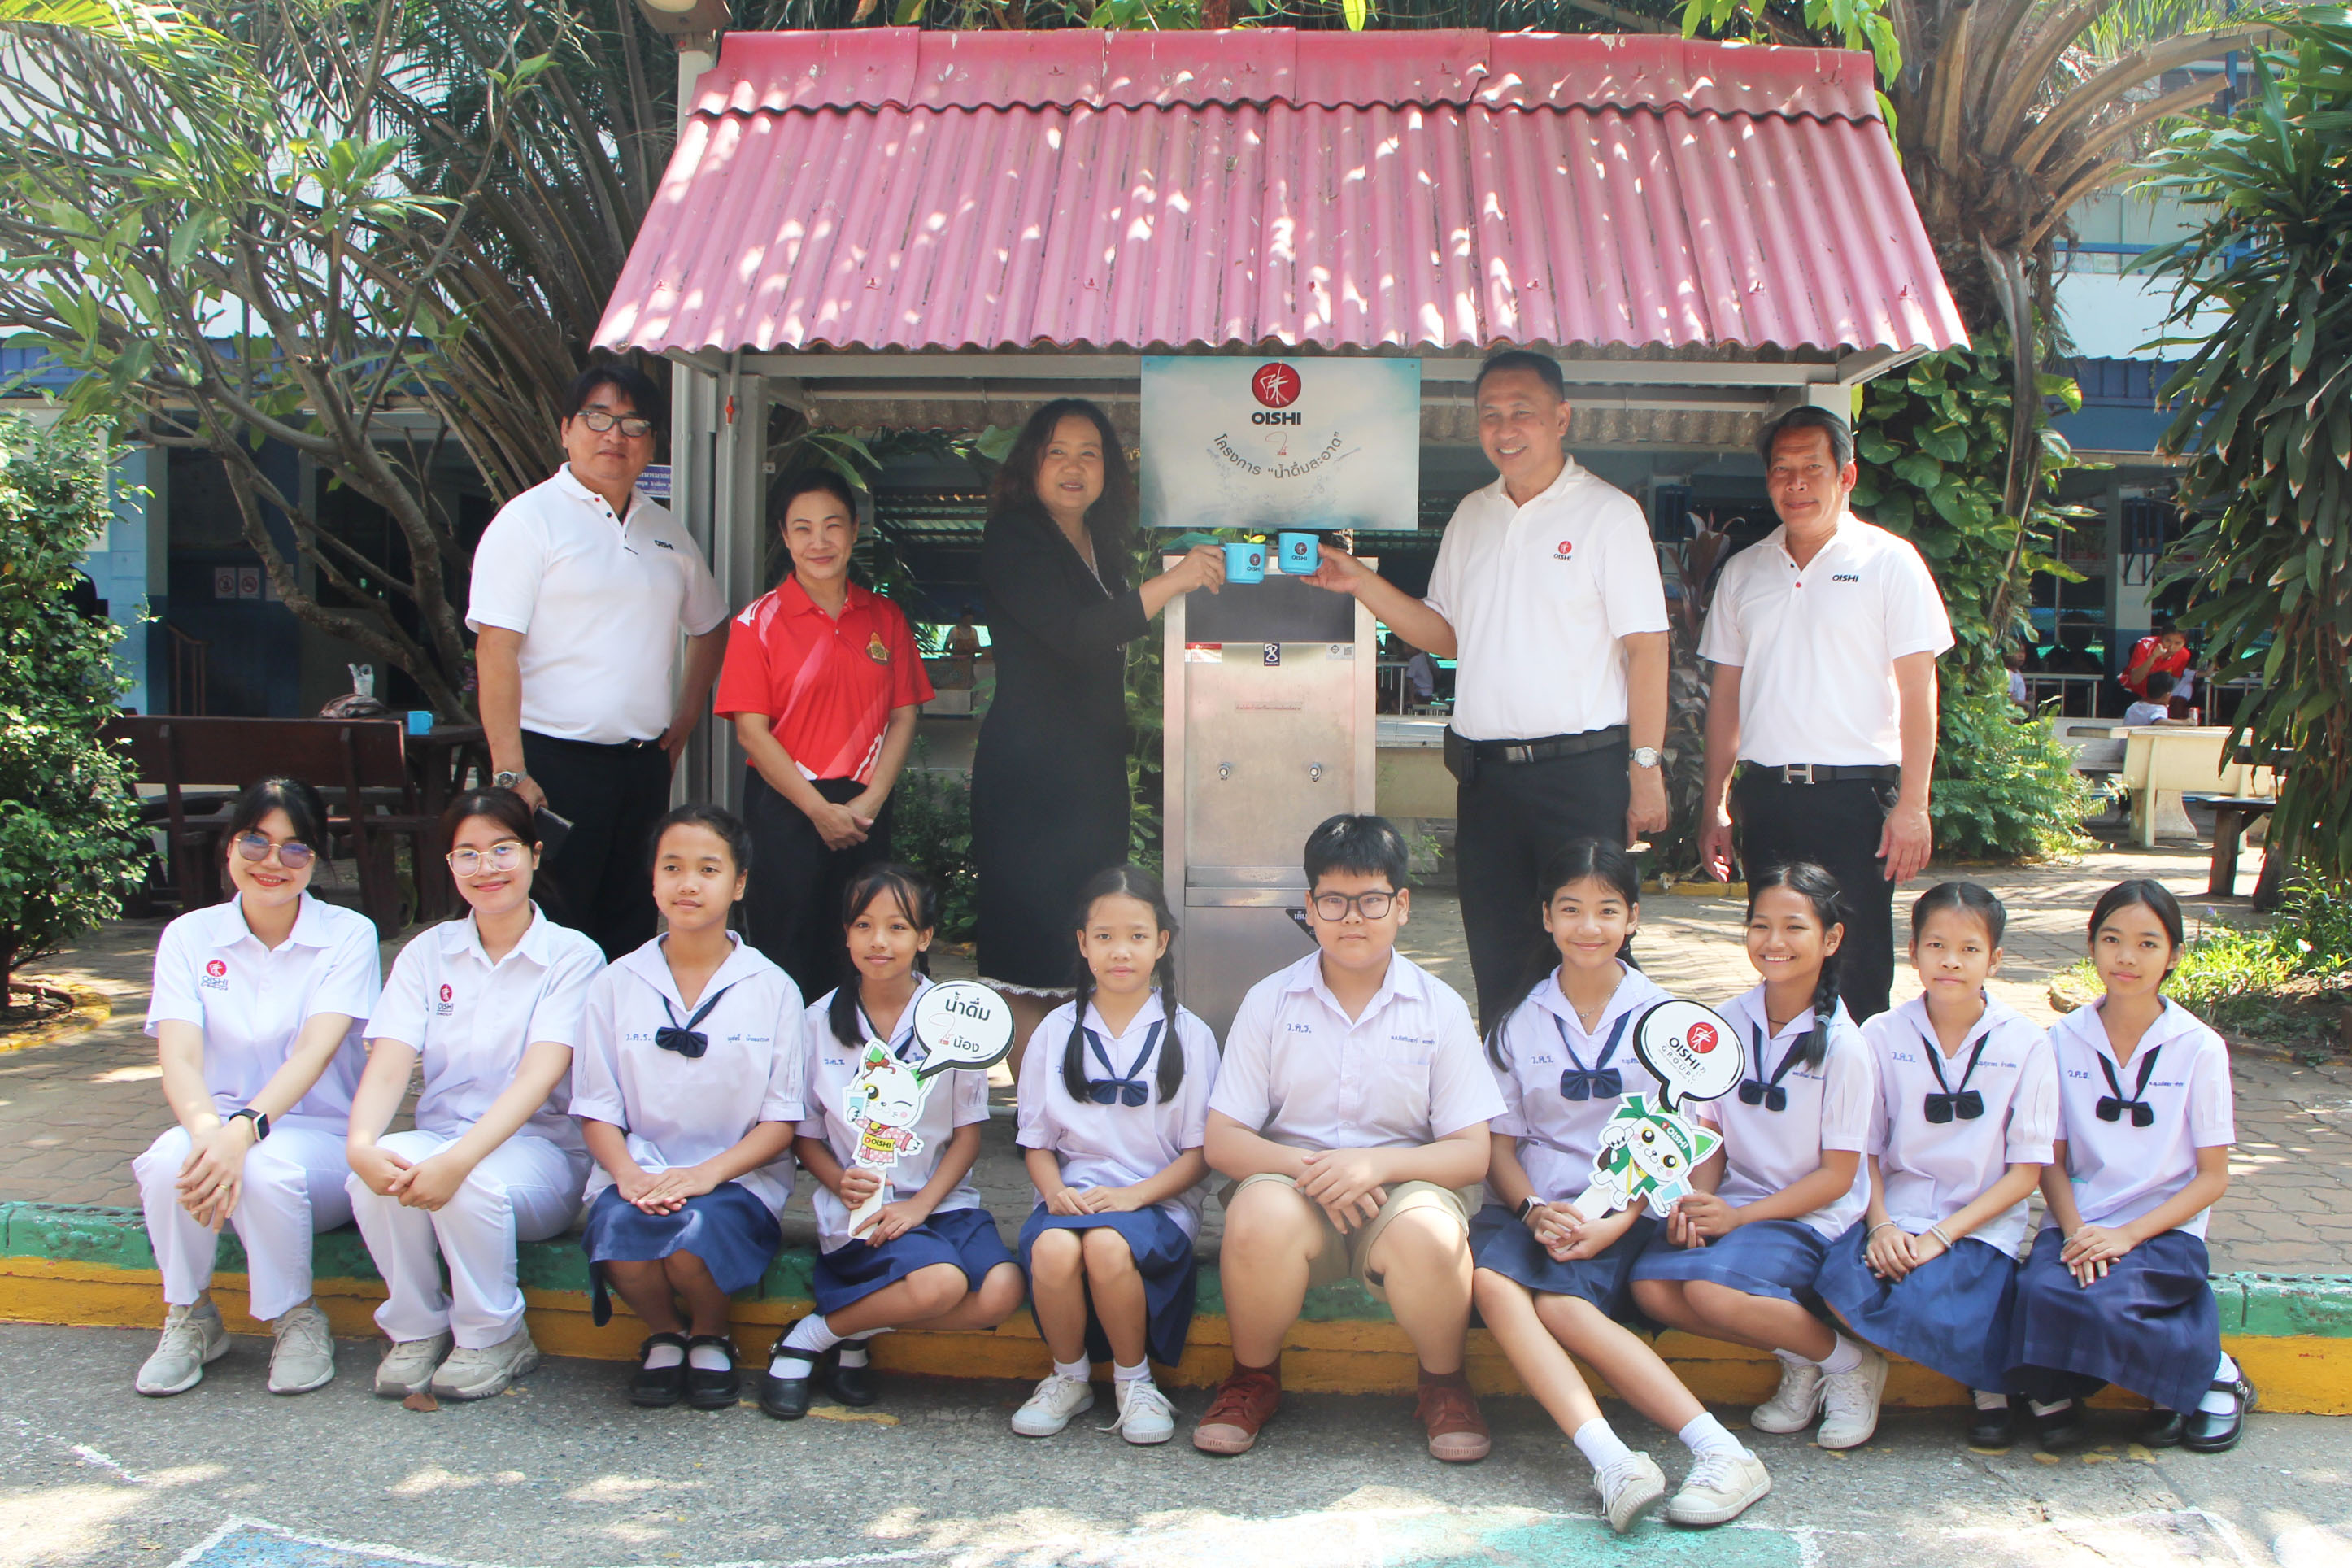 บริษัท โออิชิ กรุ๊ป จำกัด (มหาชน) จัดโครงการ “น้ำดื่มสะอาด” ครั้งที่ 6 ให้แก่ โรงเรียนวันครู 2502 จังหวัดปทุมธานี